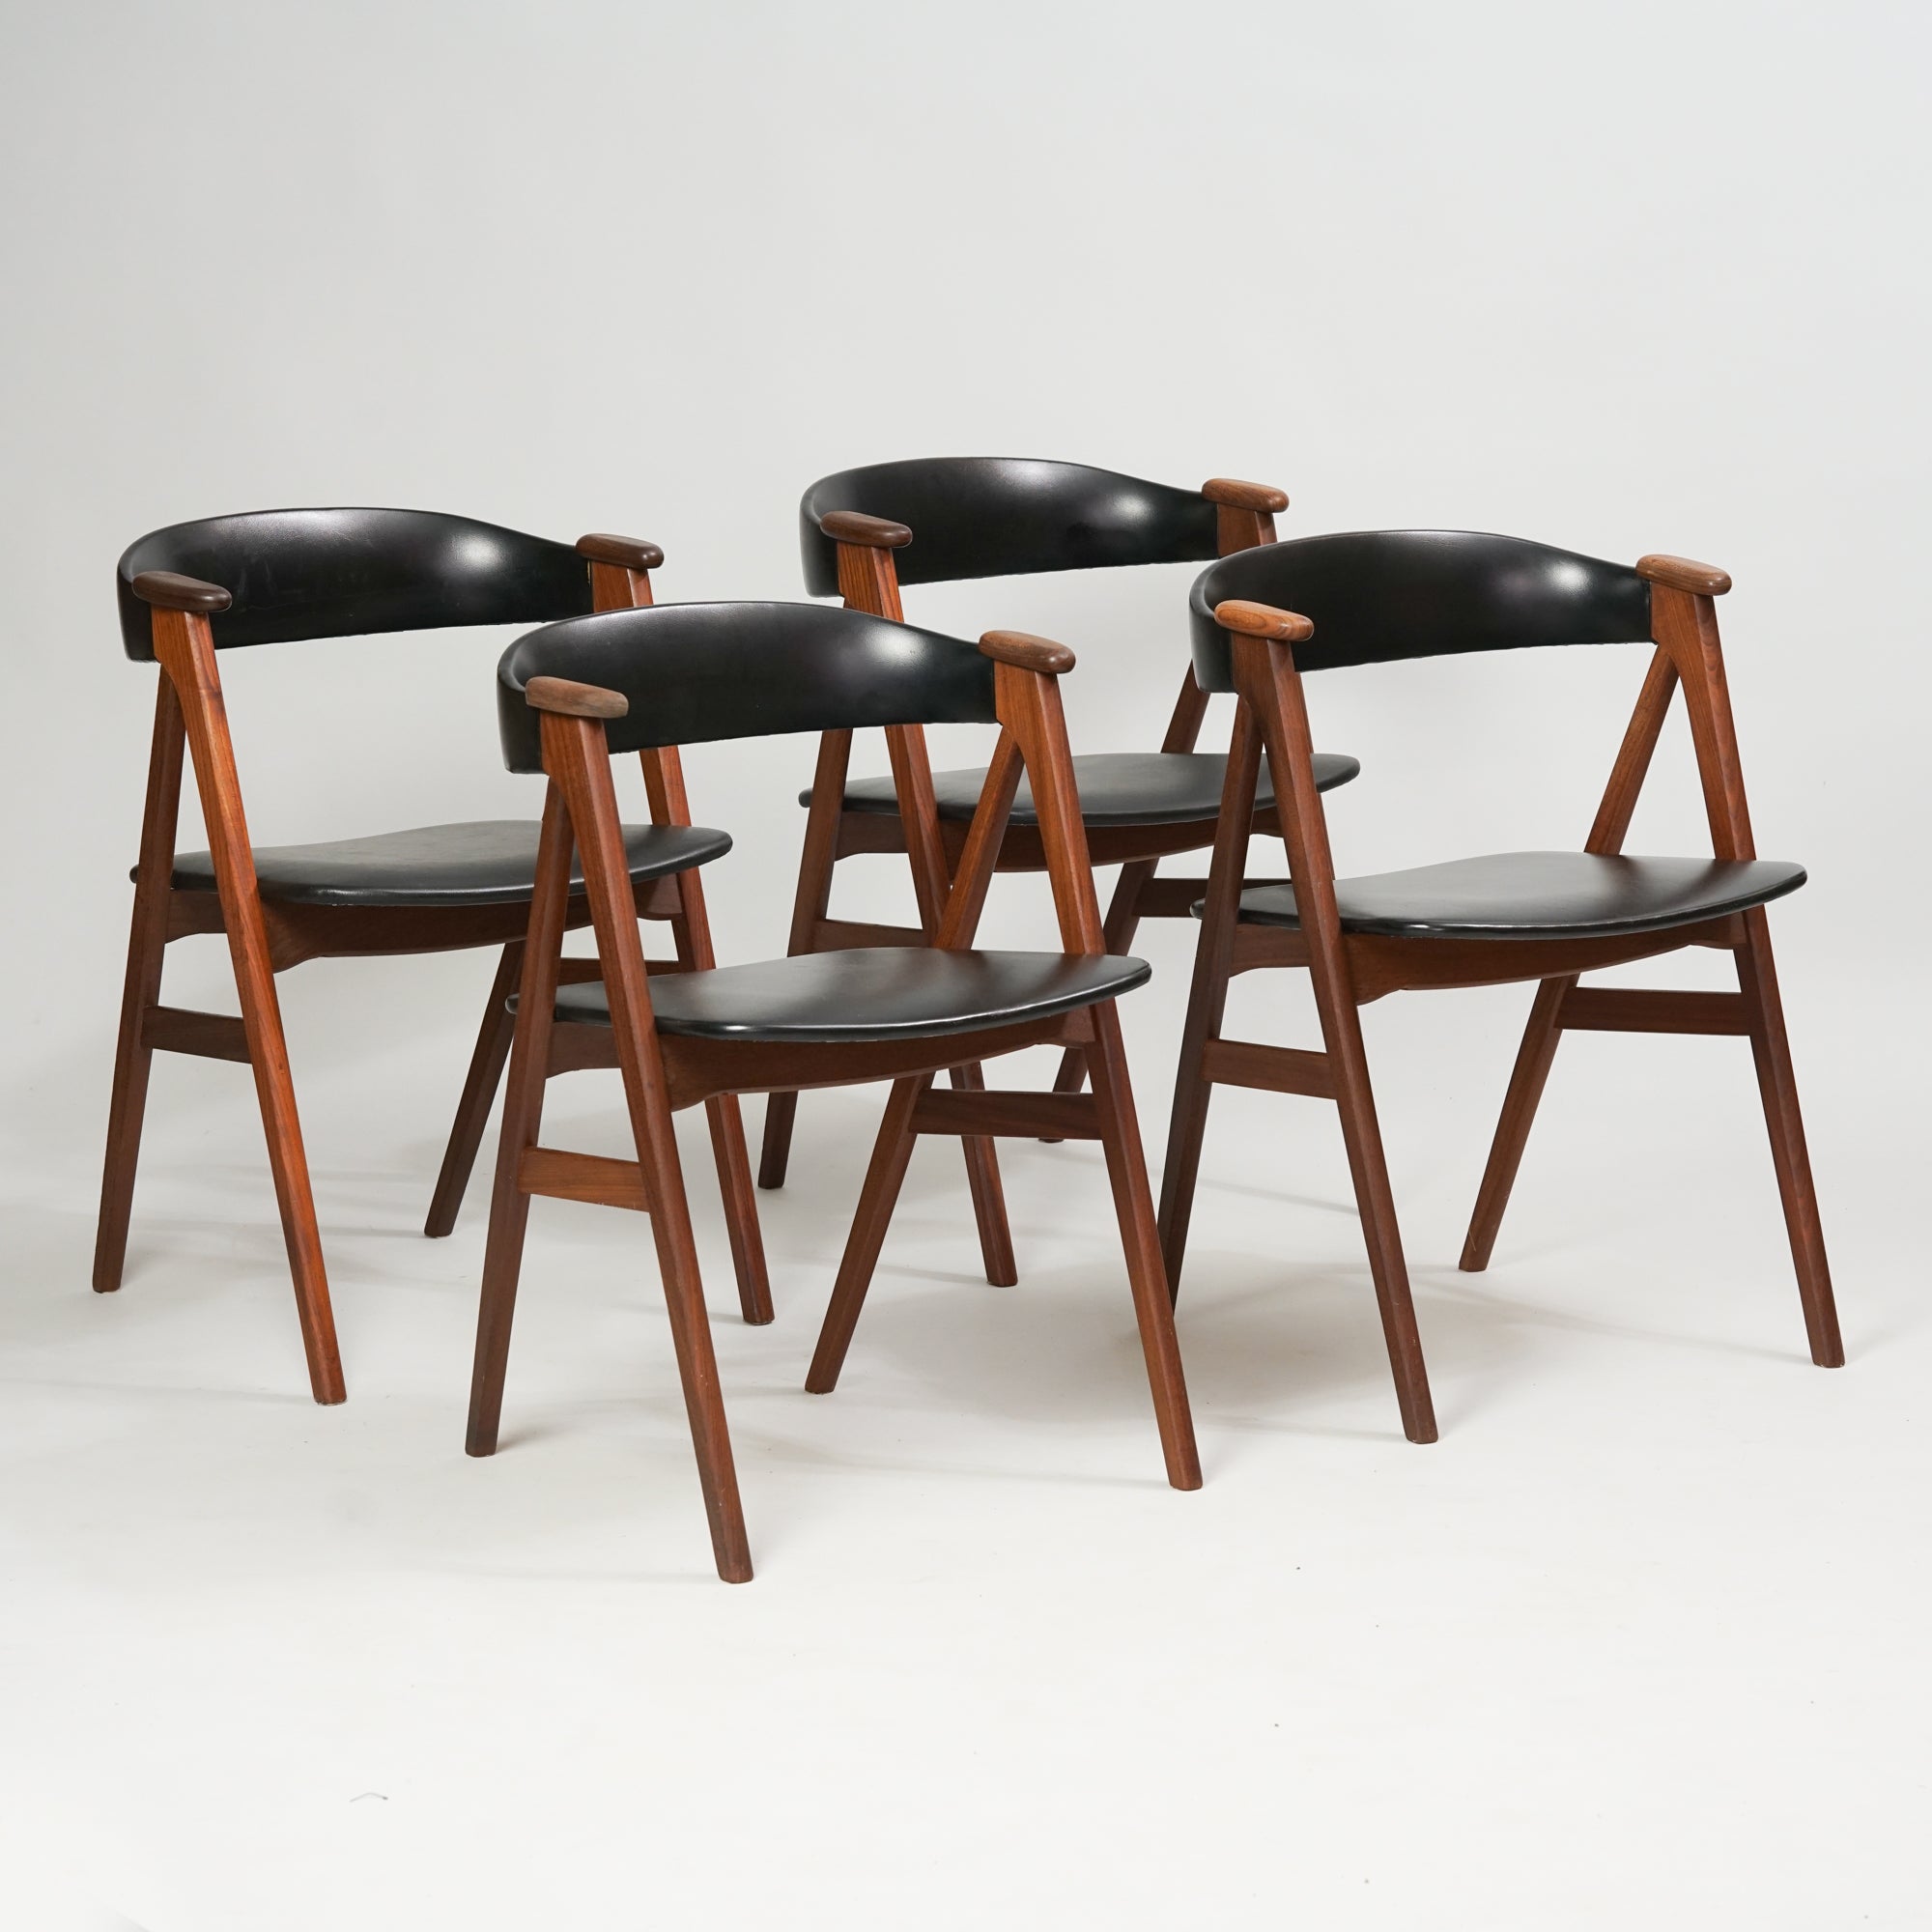 neljä samanlaista tiikistä tehtyä tuolia, joissa keinonahkaiset istuimet ja selkänojat.